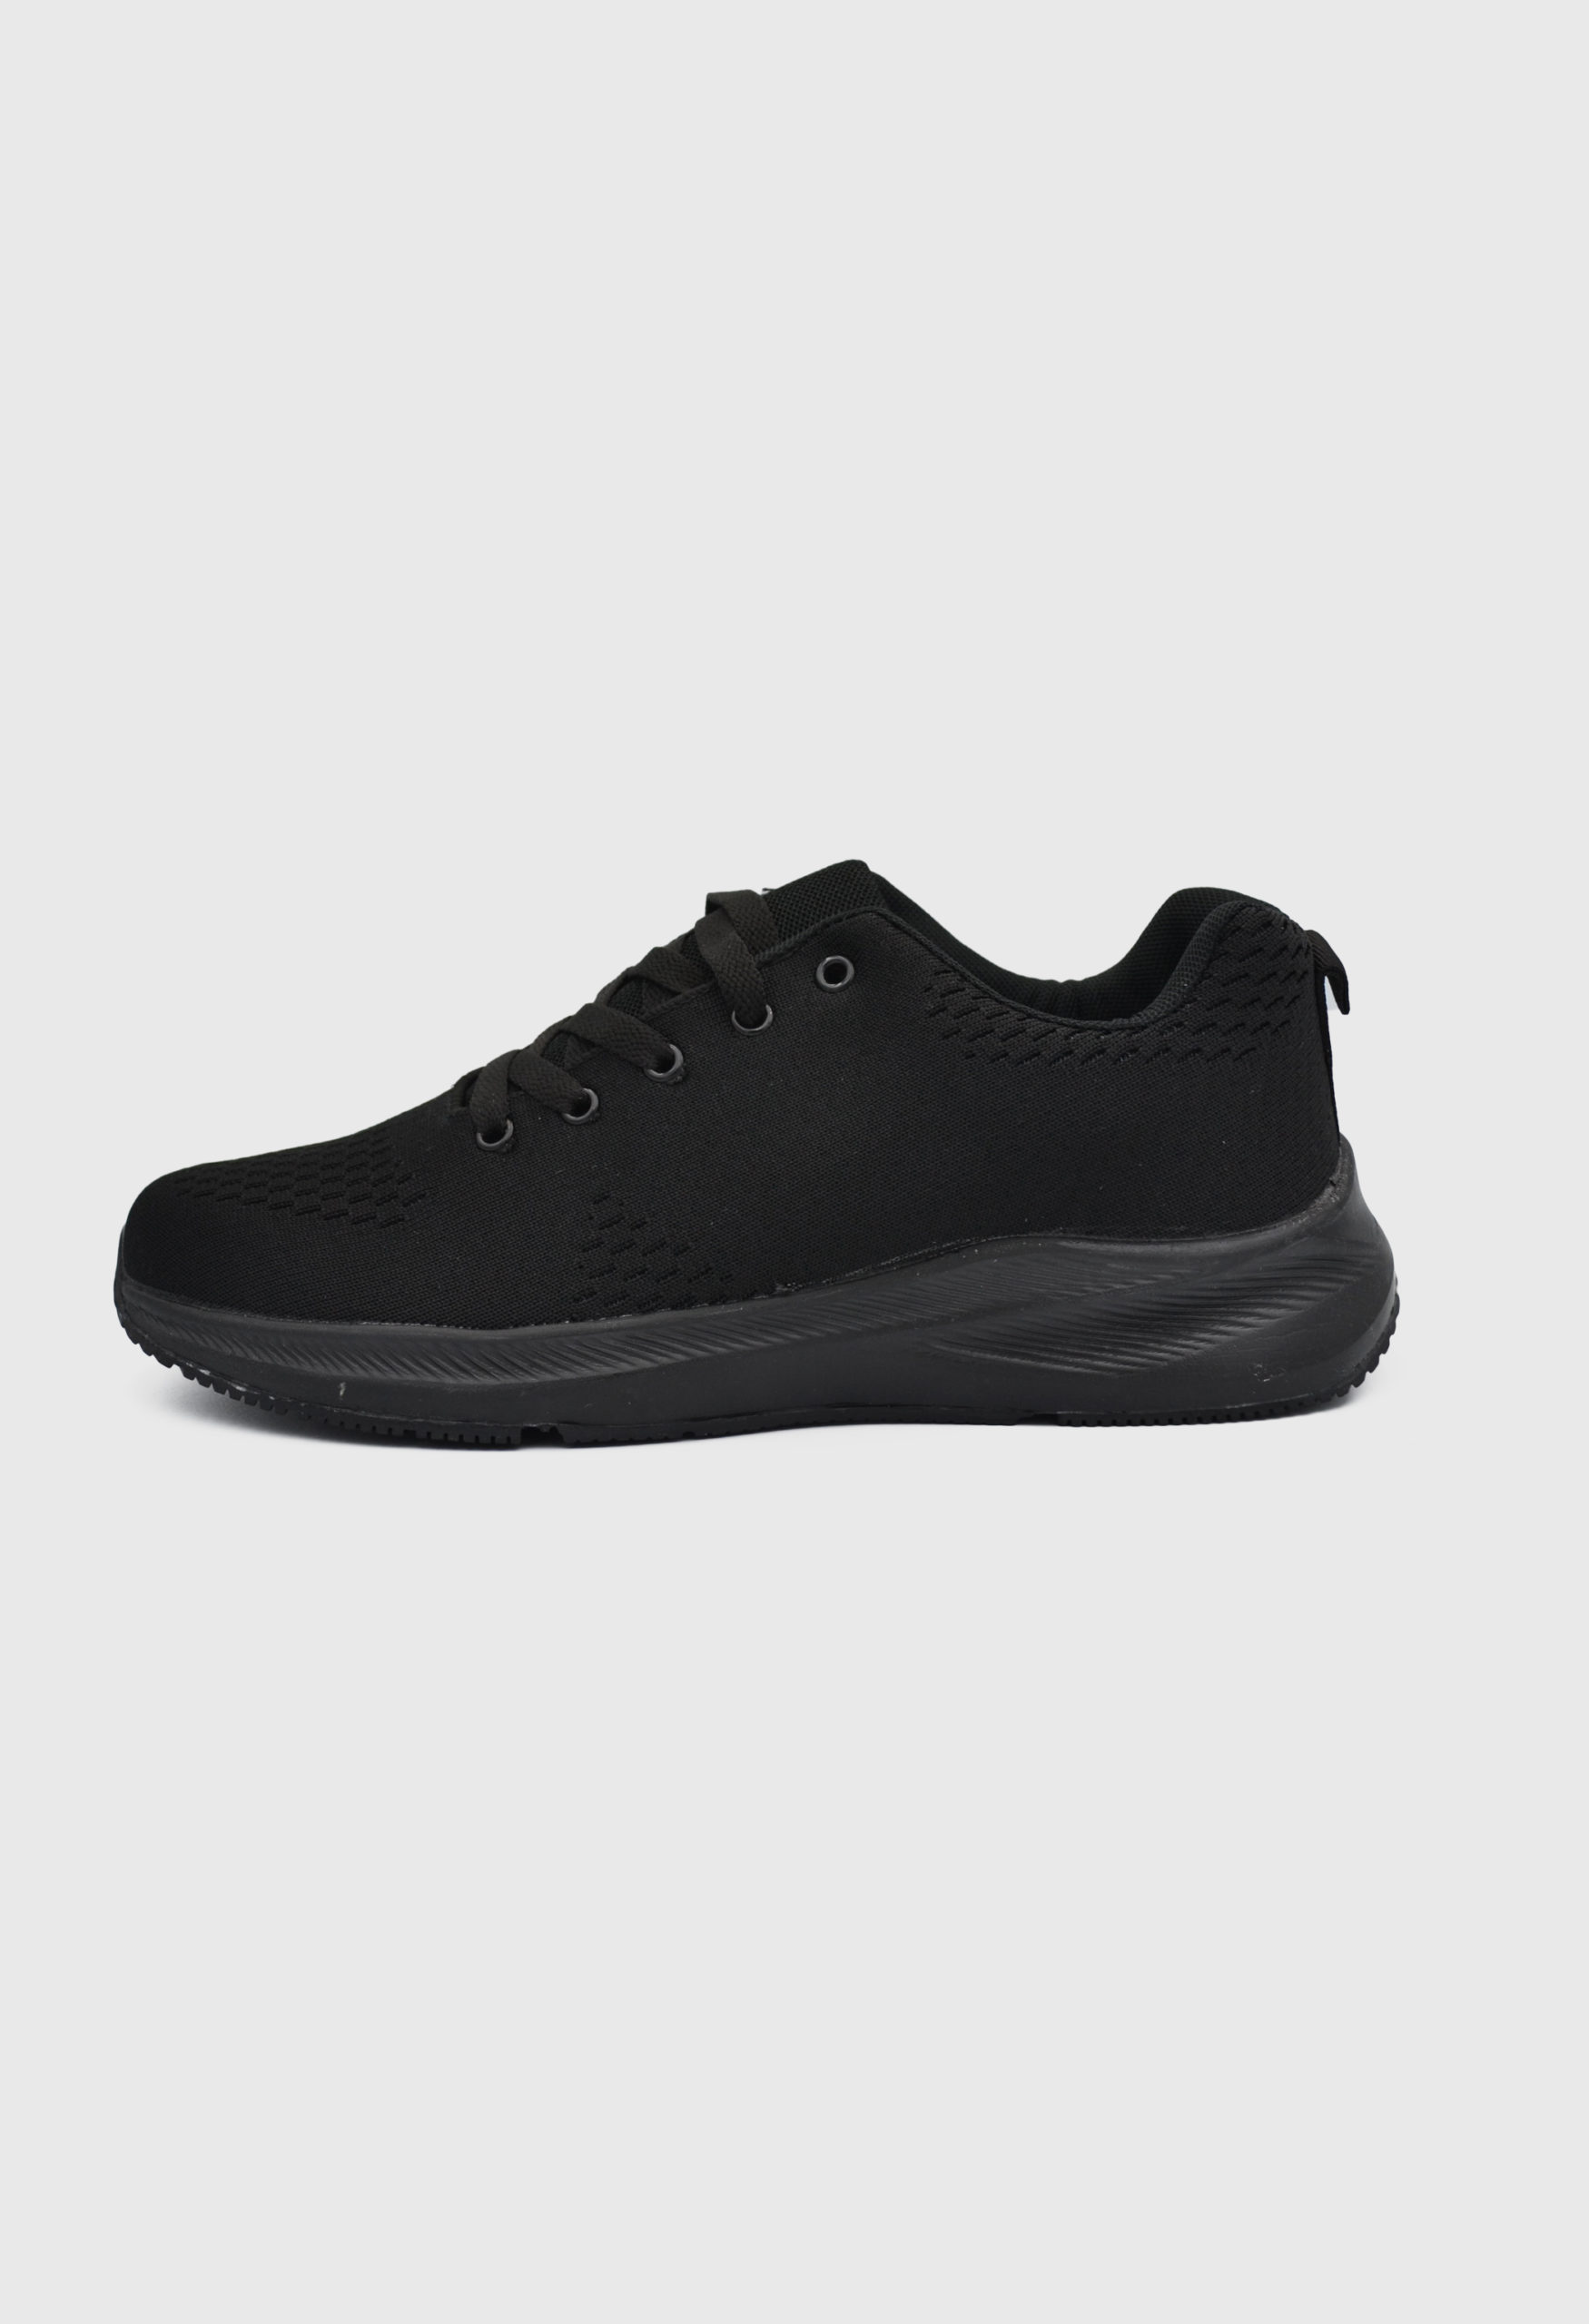 Ανδρικά Αθλητικά Παπούτσια για Τρέξιμο Μαύρο / 6926595 ΑΘΛΗΤΙΚΑ & SNEAKERS joya.gr